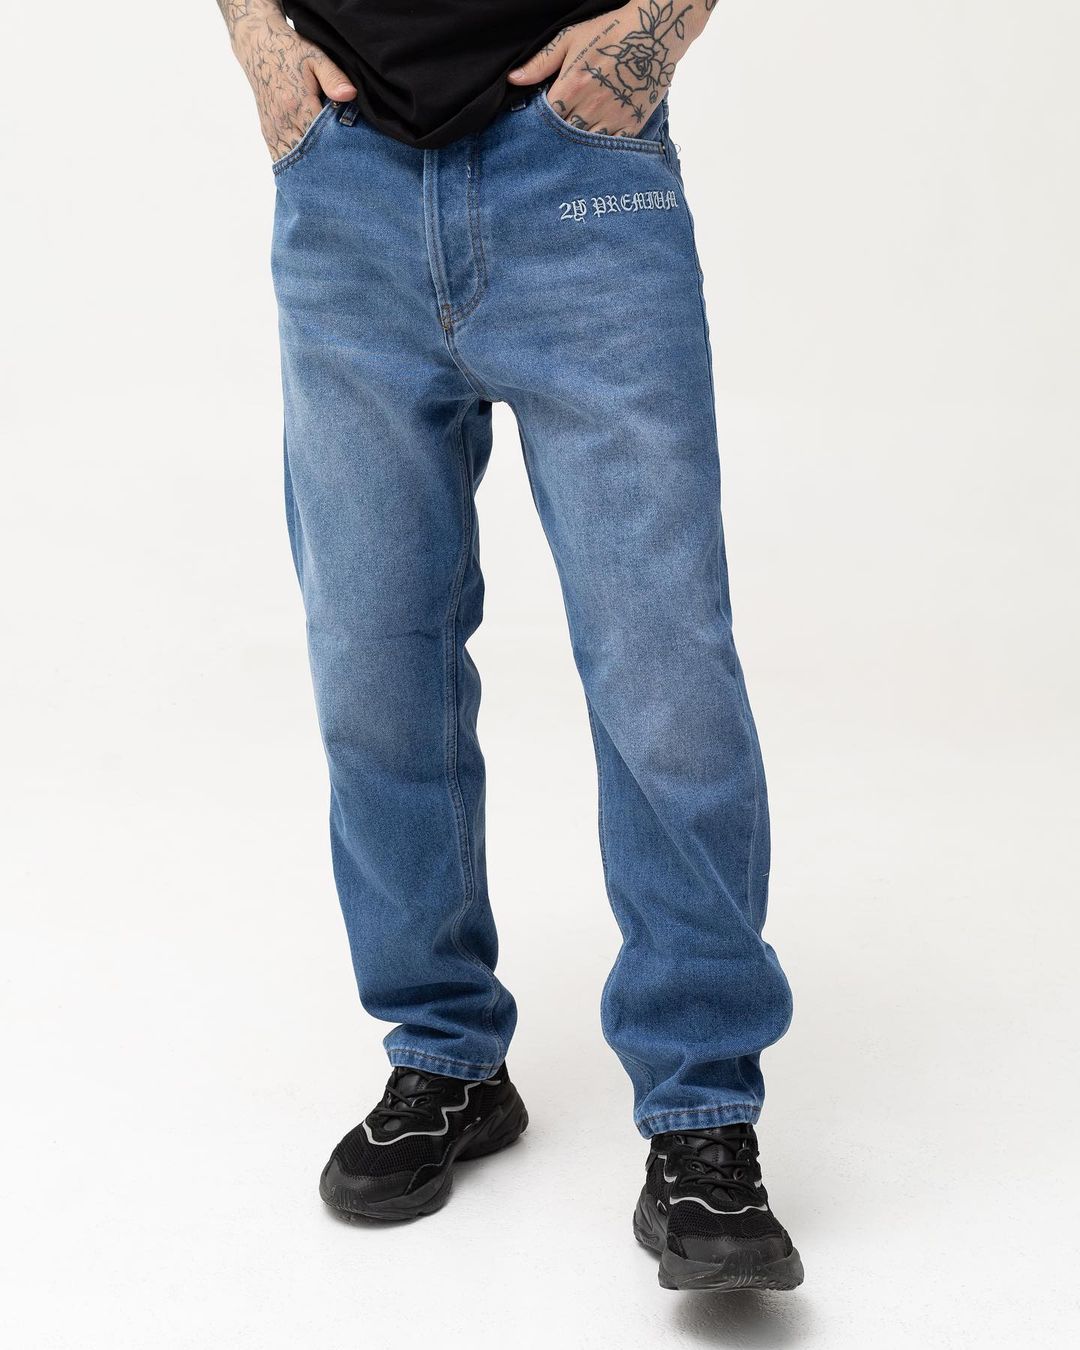 Чоловічі сині джинси BEZET базові з вишивкою - Фото 4